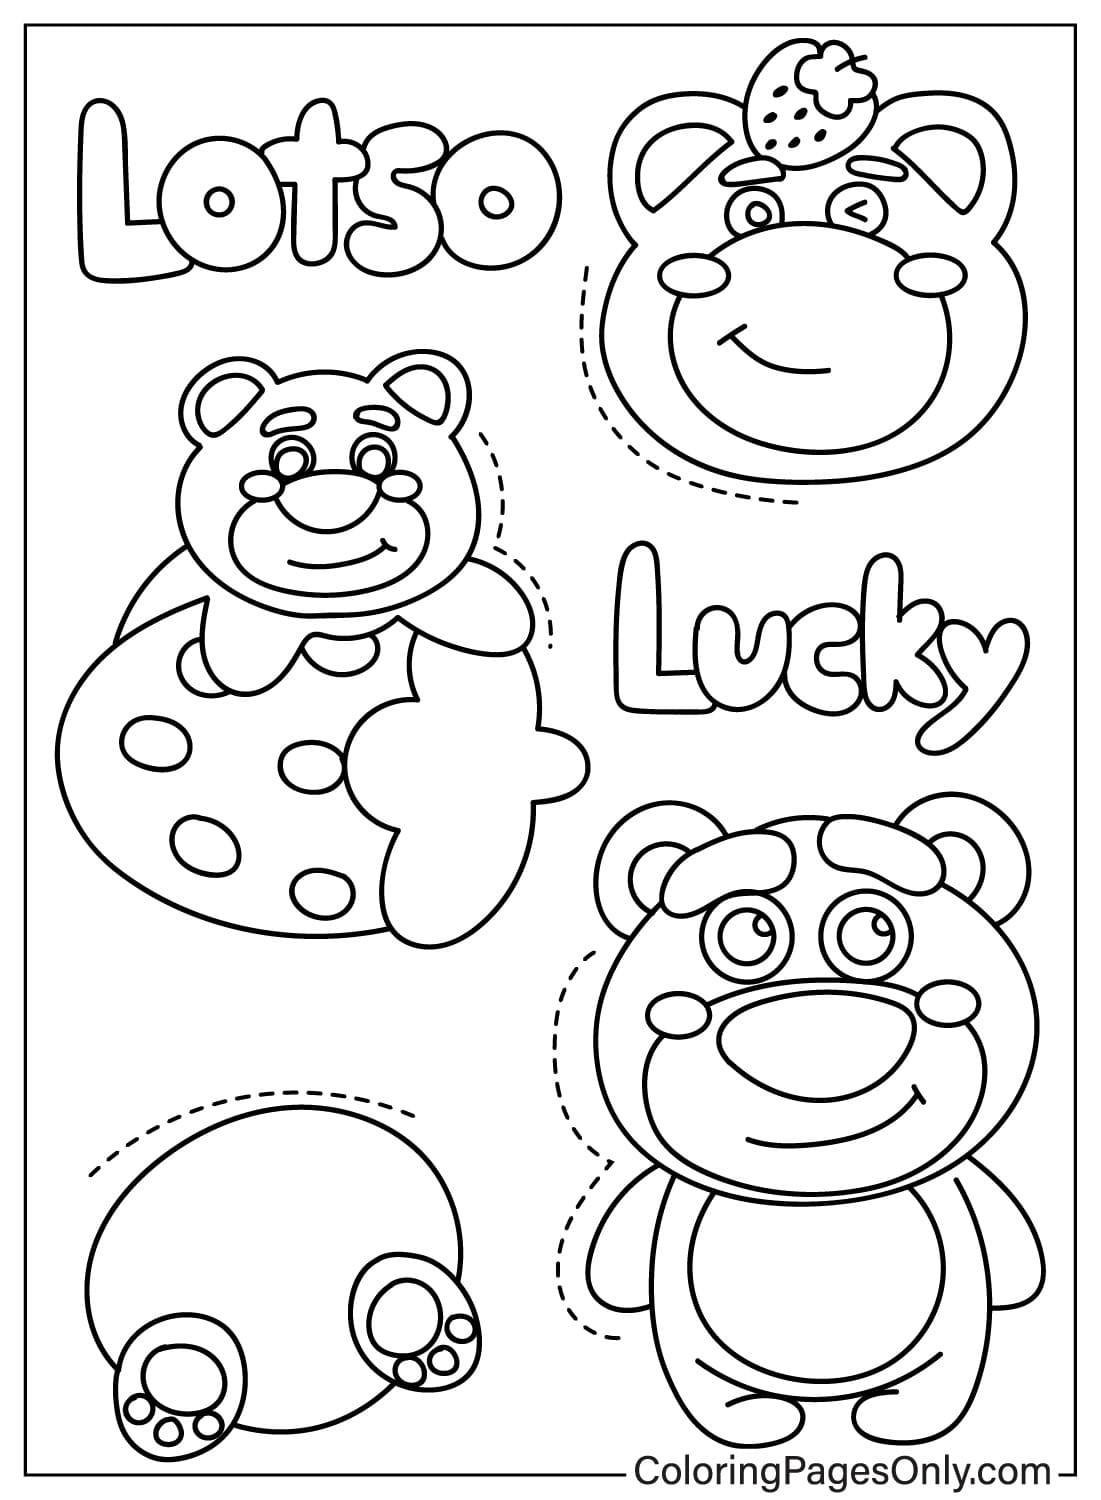 Lotso Bear kleurplaat om af te drukken vanuit Lotso Bear